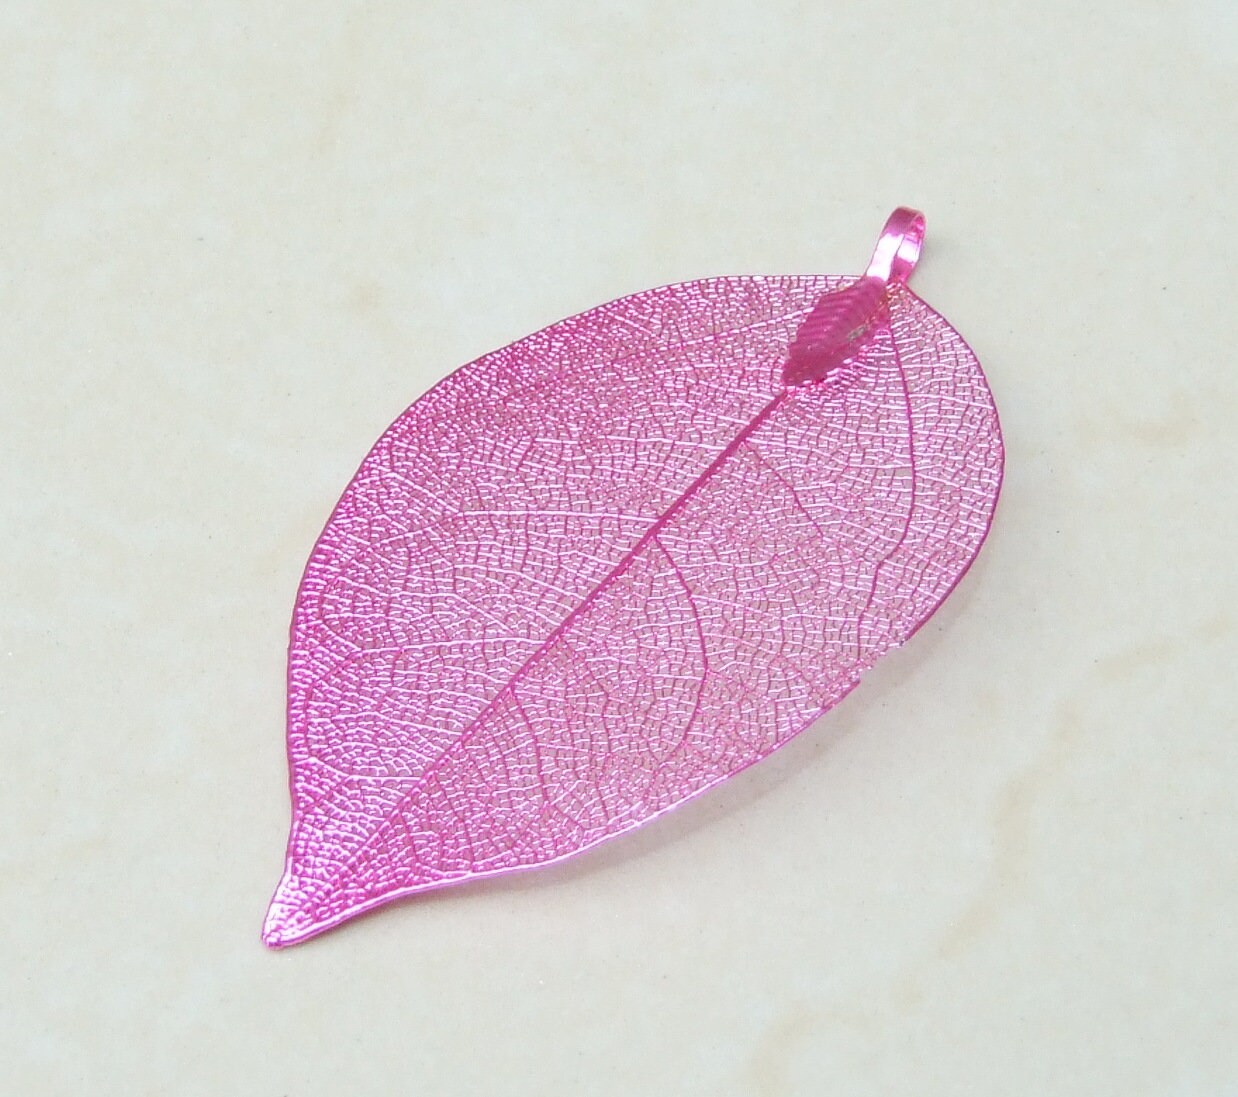 Liquid Metal Leaf Pendant - Large Leaf Pendant - Autumn Leaf - Pink - BOHO - Tribal - 34mm x 64mm - 2255